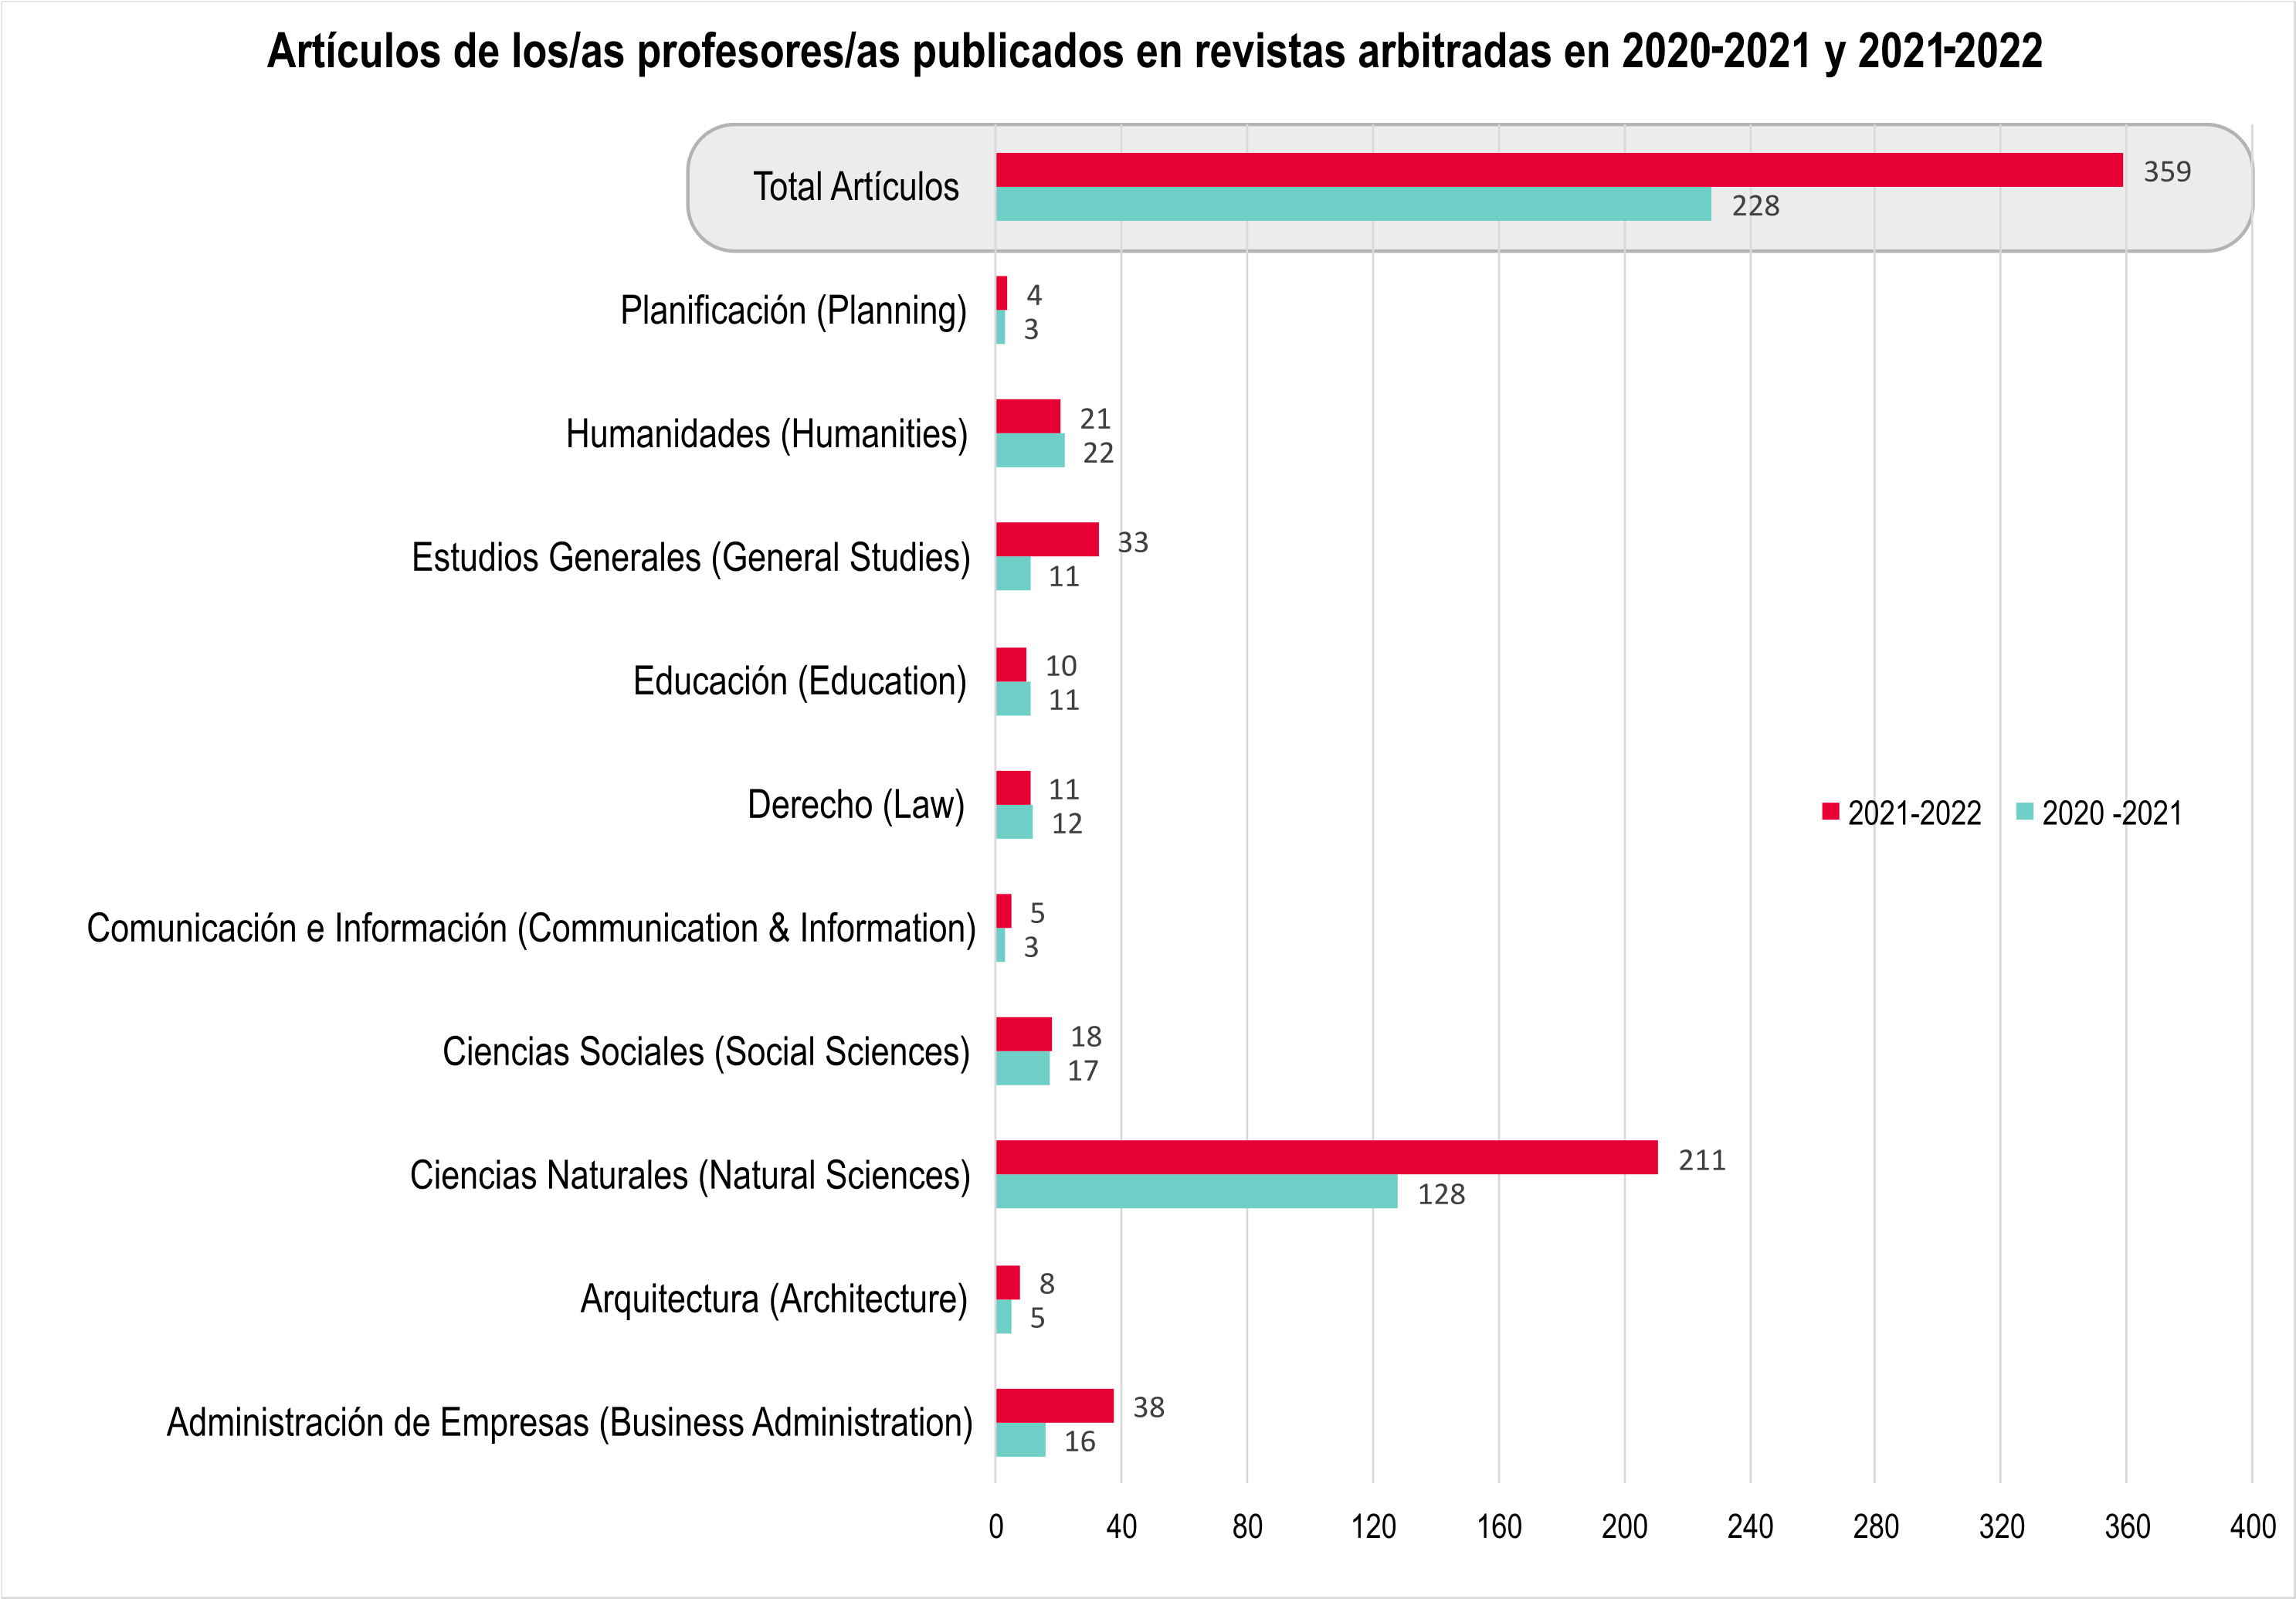 Gráfica de barra que muestra la cantidad de artículos publicados por profesores en revistas arbitradas en 2020-21 y 2021-22 (un total de 359 artículos publicados en 2021-2022 y 228 artículos en 2020-2021)